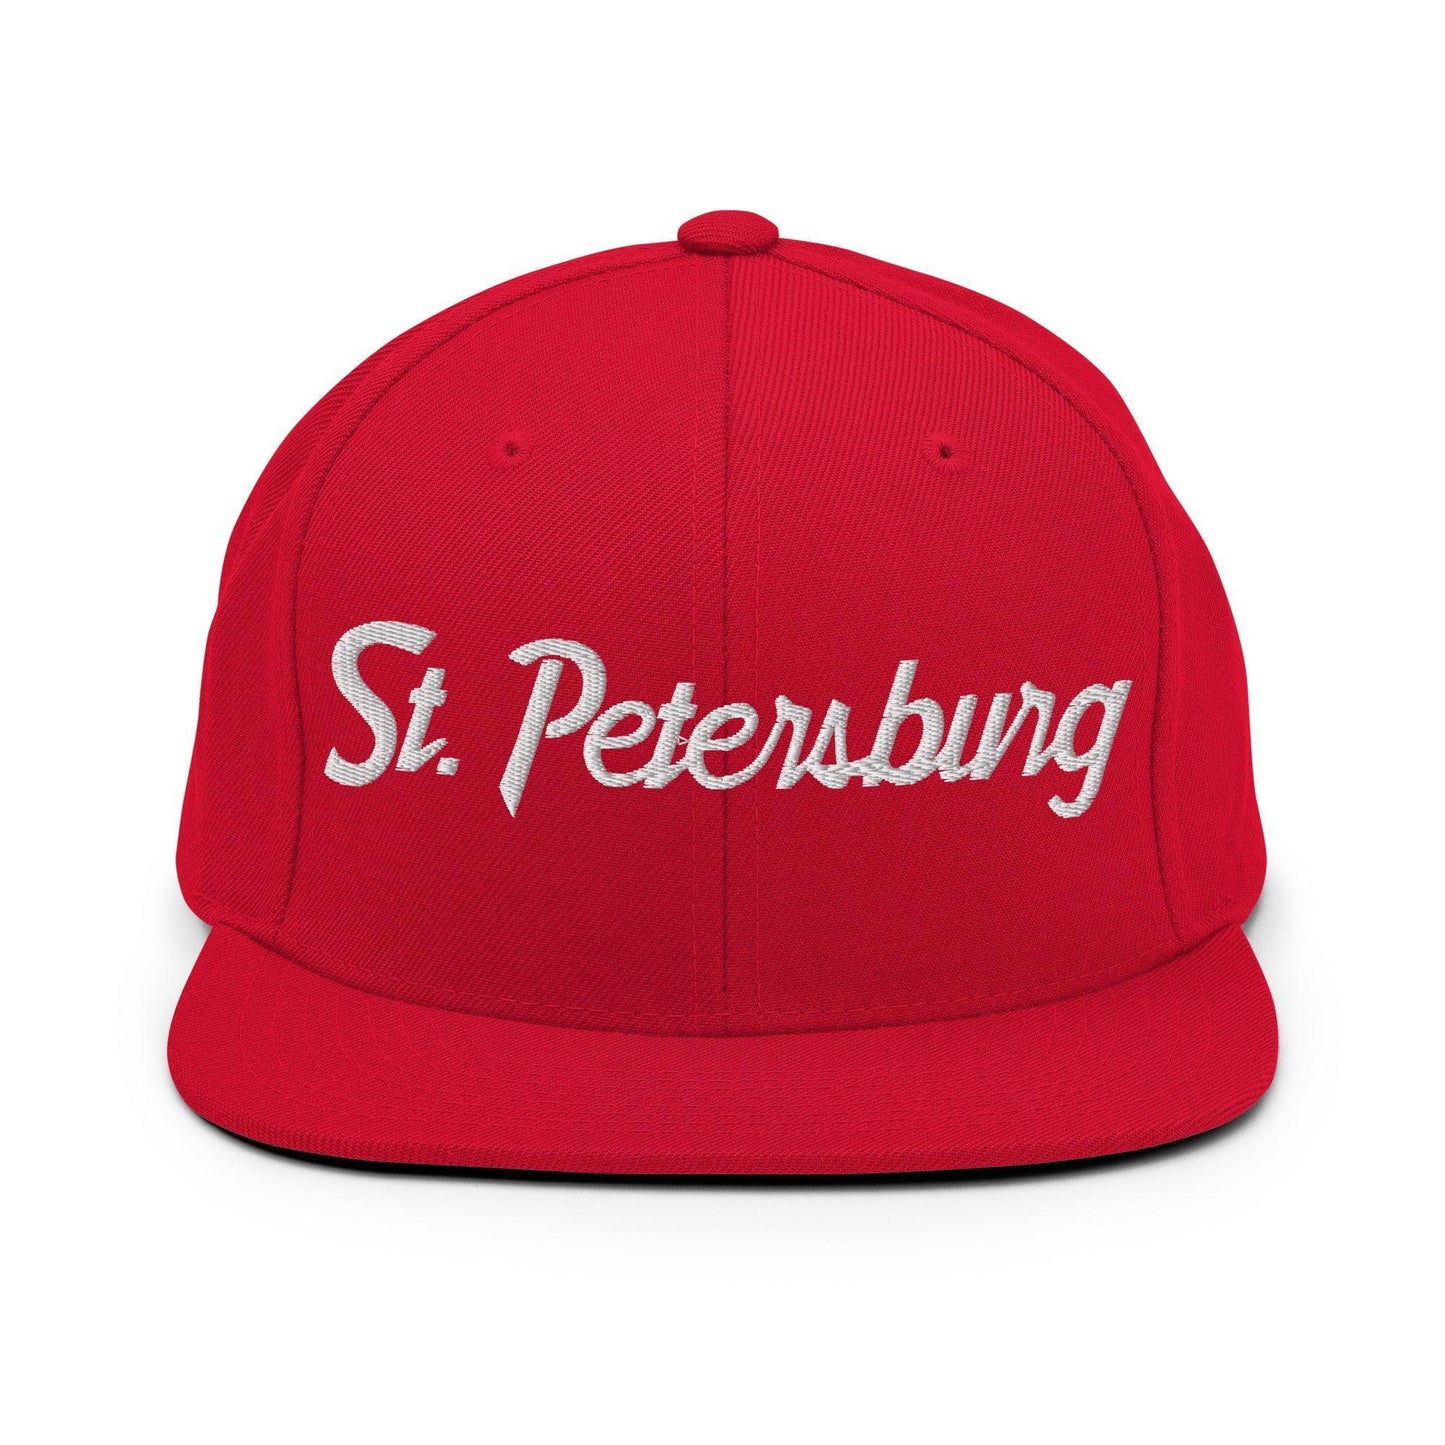 St. Petersburg Script Snapback Hat Red